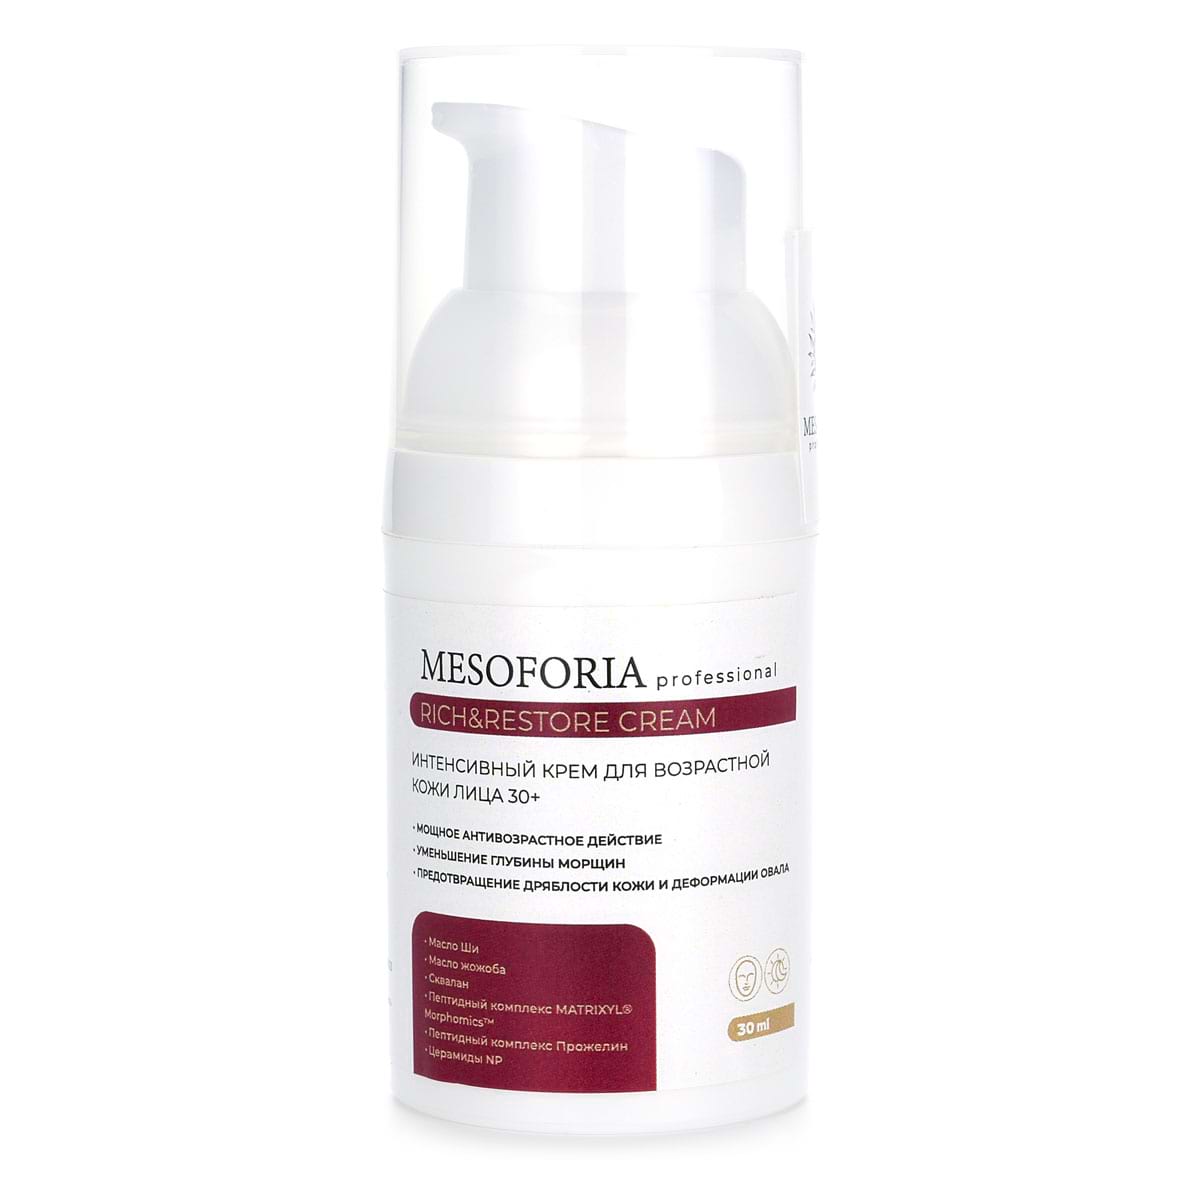 Rich&Restore Cream / Интенсивный крем для возрастной кожи лица 30+, Mesoforia (Мезофория) – 30 мл